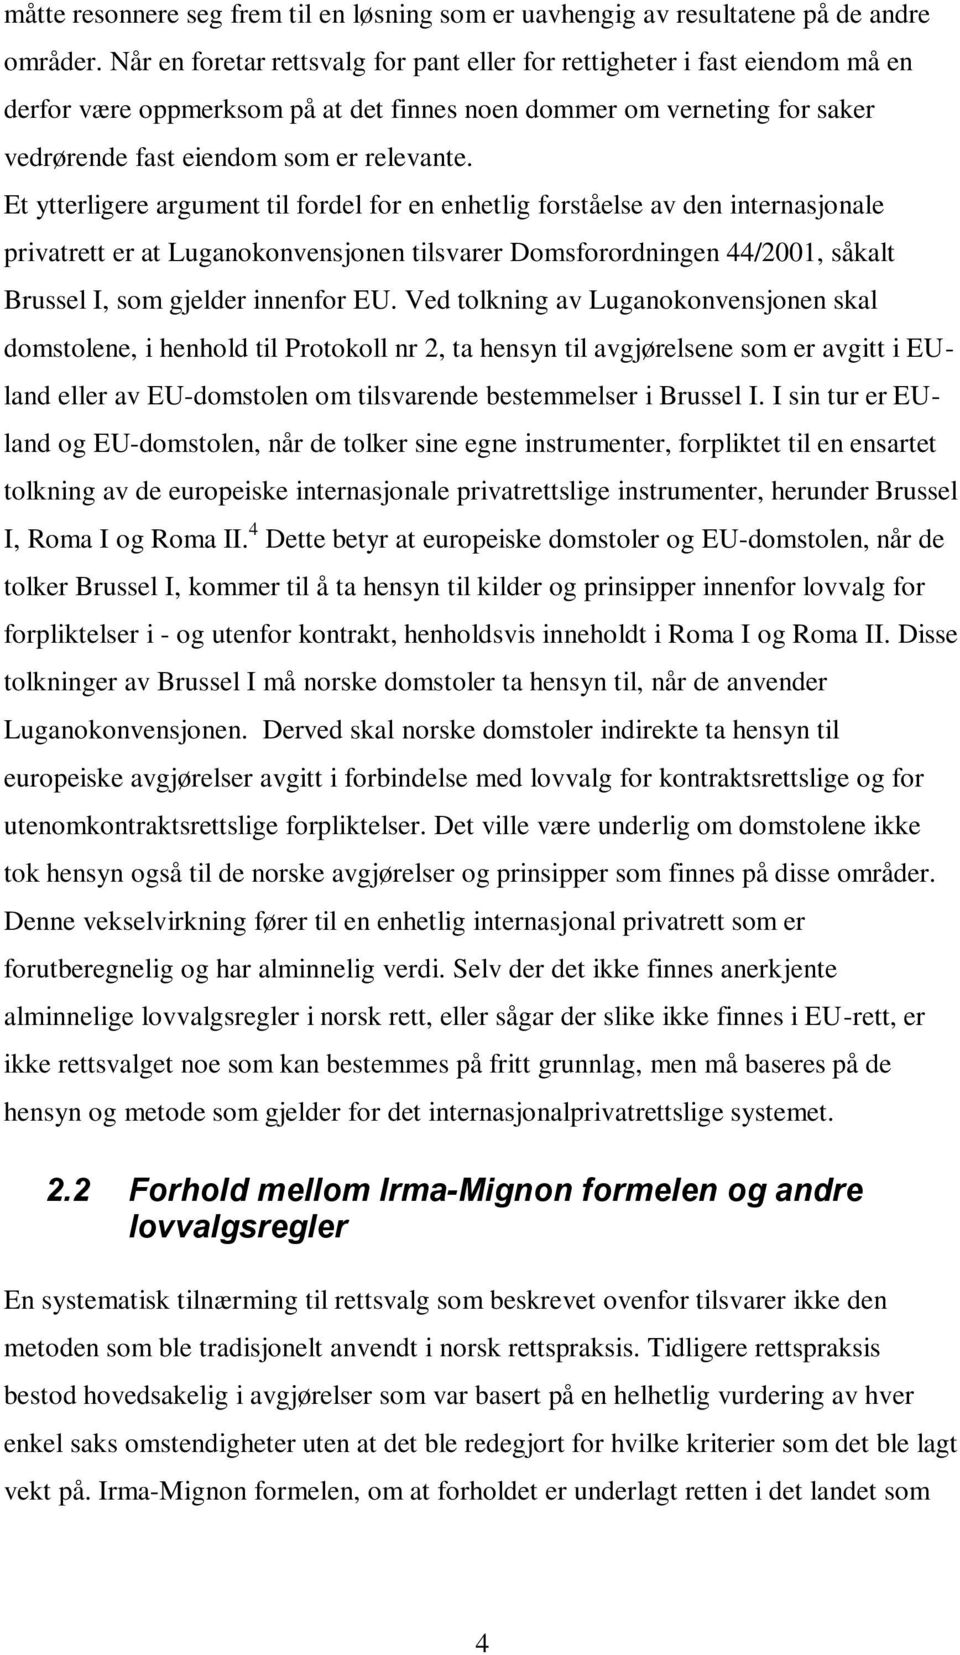 Et ytterligere argument til fordel for en enhetlig forståelse av den internasjonale privatrett er at Luganokonvensjonen tilsvarer Domsforordningen 44/2001, såkalt Brussel I, som gjelder innenfor EU.